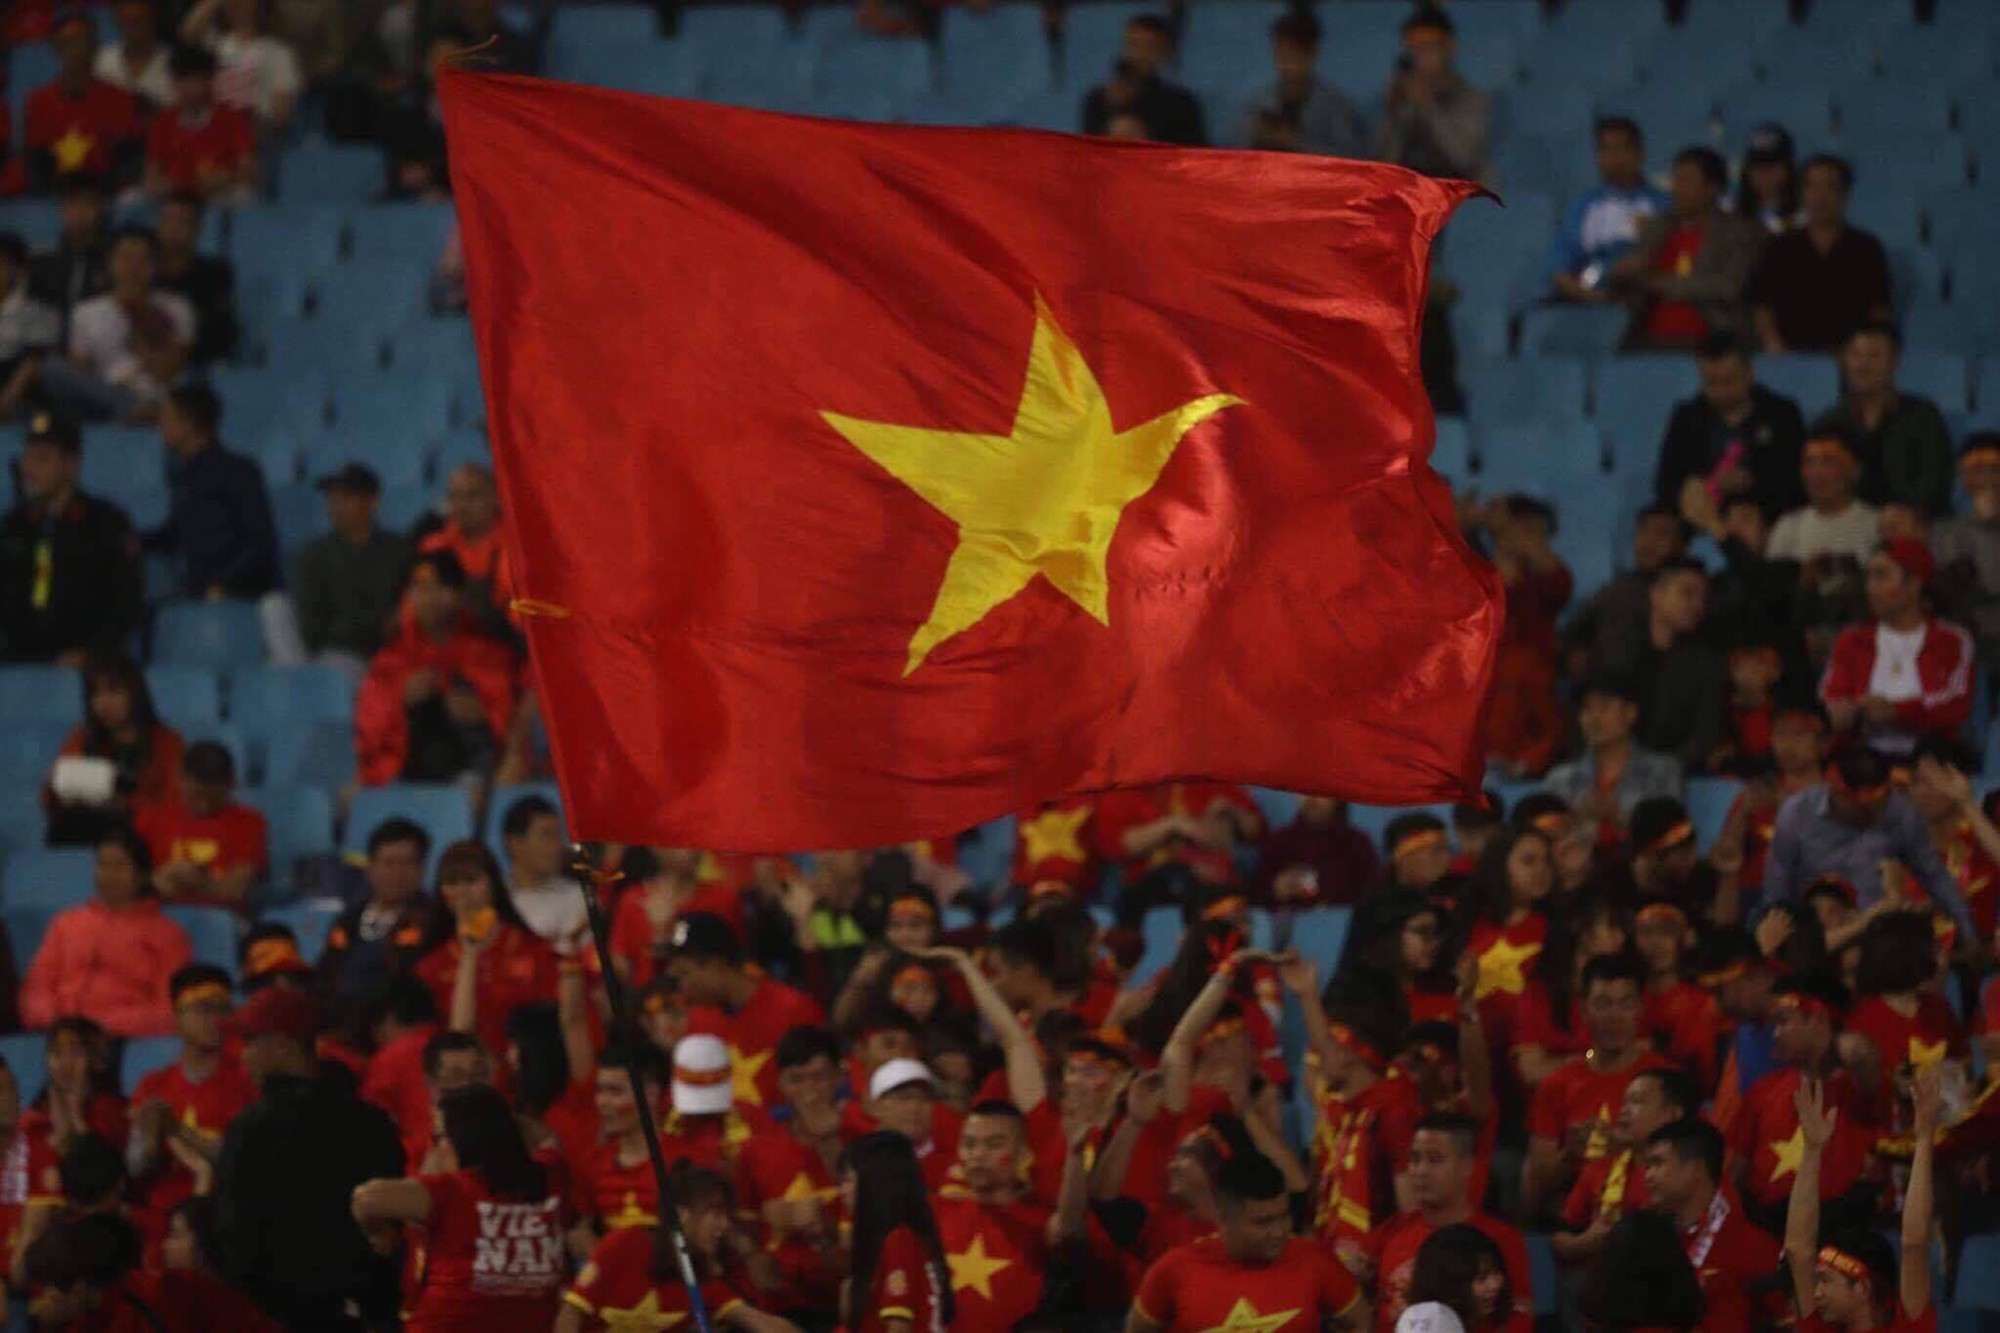 Trận đấu giữa bóng đá Việt Nam và Thái Lan luôn là cuộc đối đầu rất được chờ đợi. Cả hai đội đều rất quyết tâm để có kết quả tốt nhất và nhận được sự quan tâm từ các khán giả.